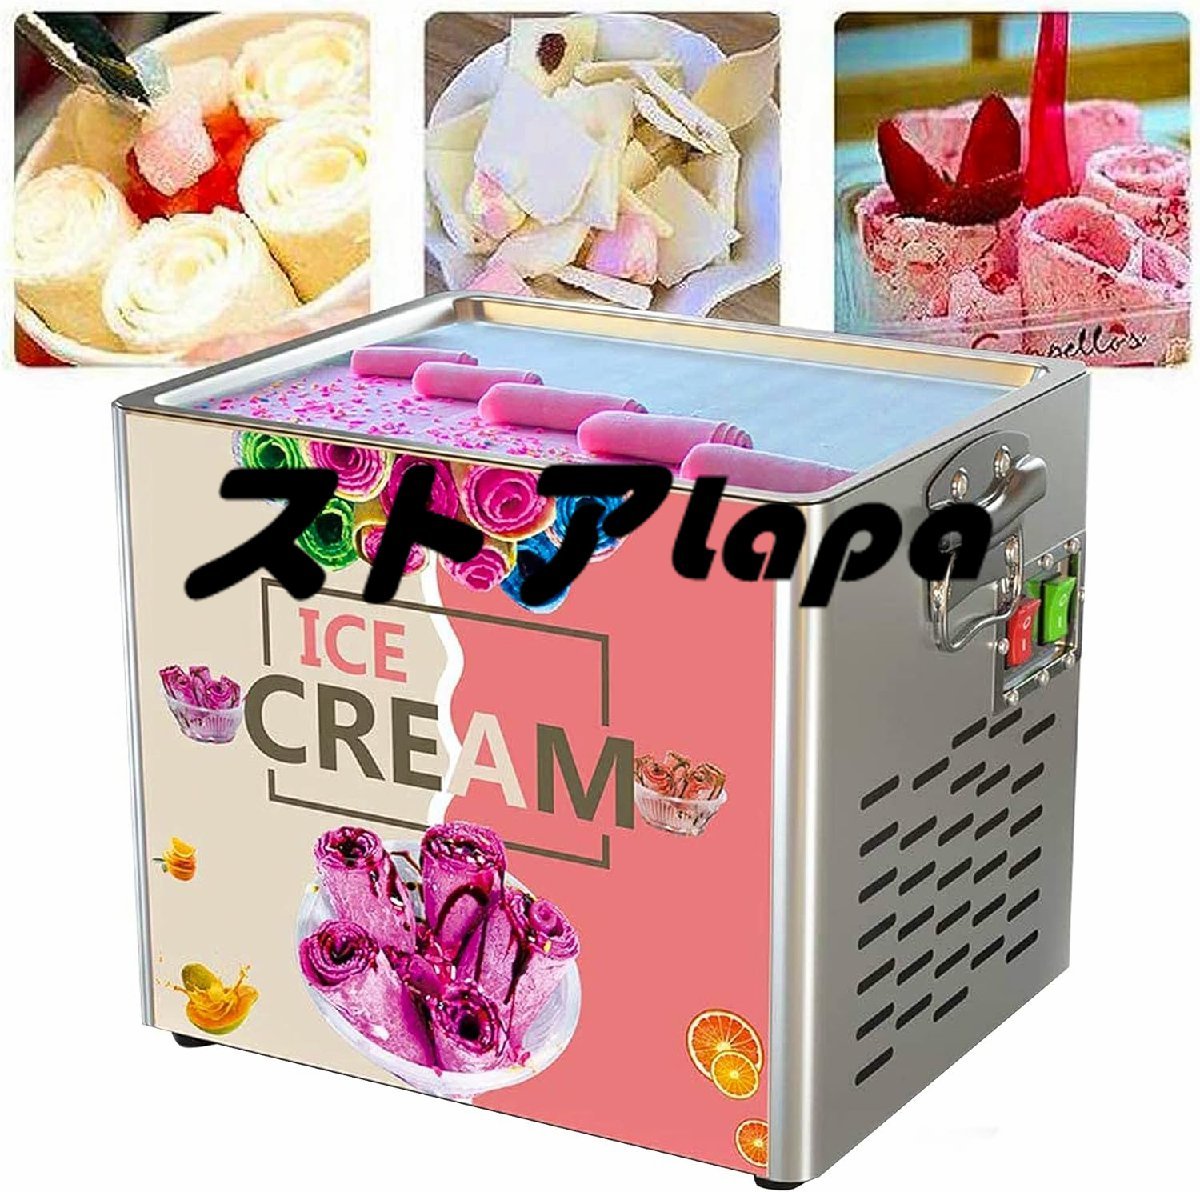 180W商用ロールアイスクリームマシン、焼成ディッシュ付きロールアイスクリームメーカー、アイスリームロールメーカー q1585